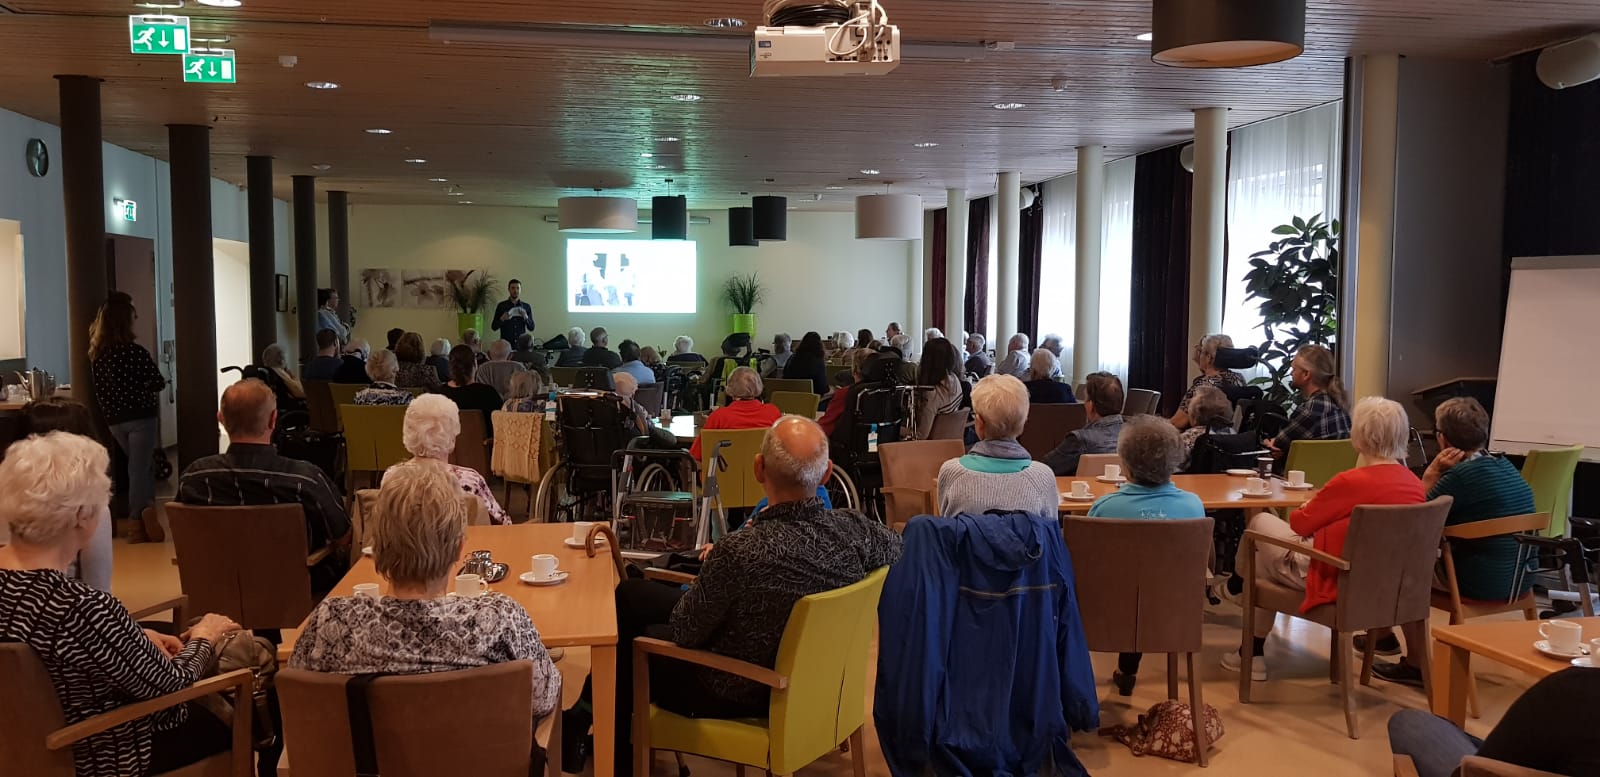 Foto van de presentatie in het woonzorgcentrum door medewerkers van het Gelders Archief